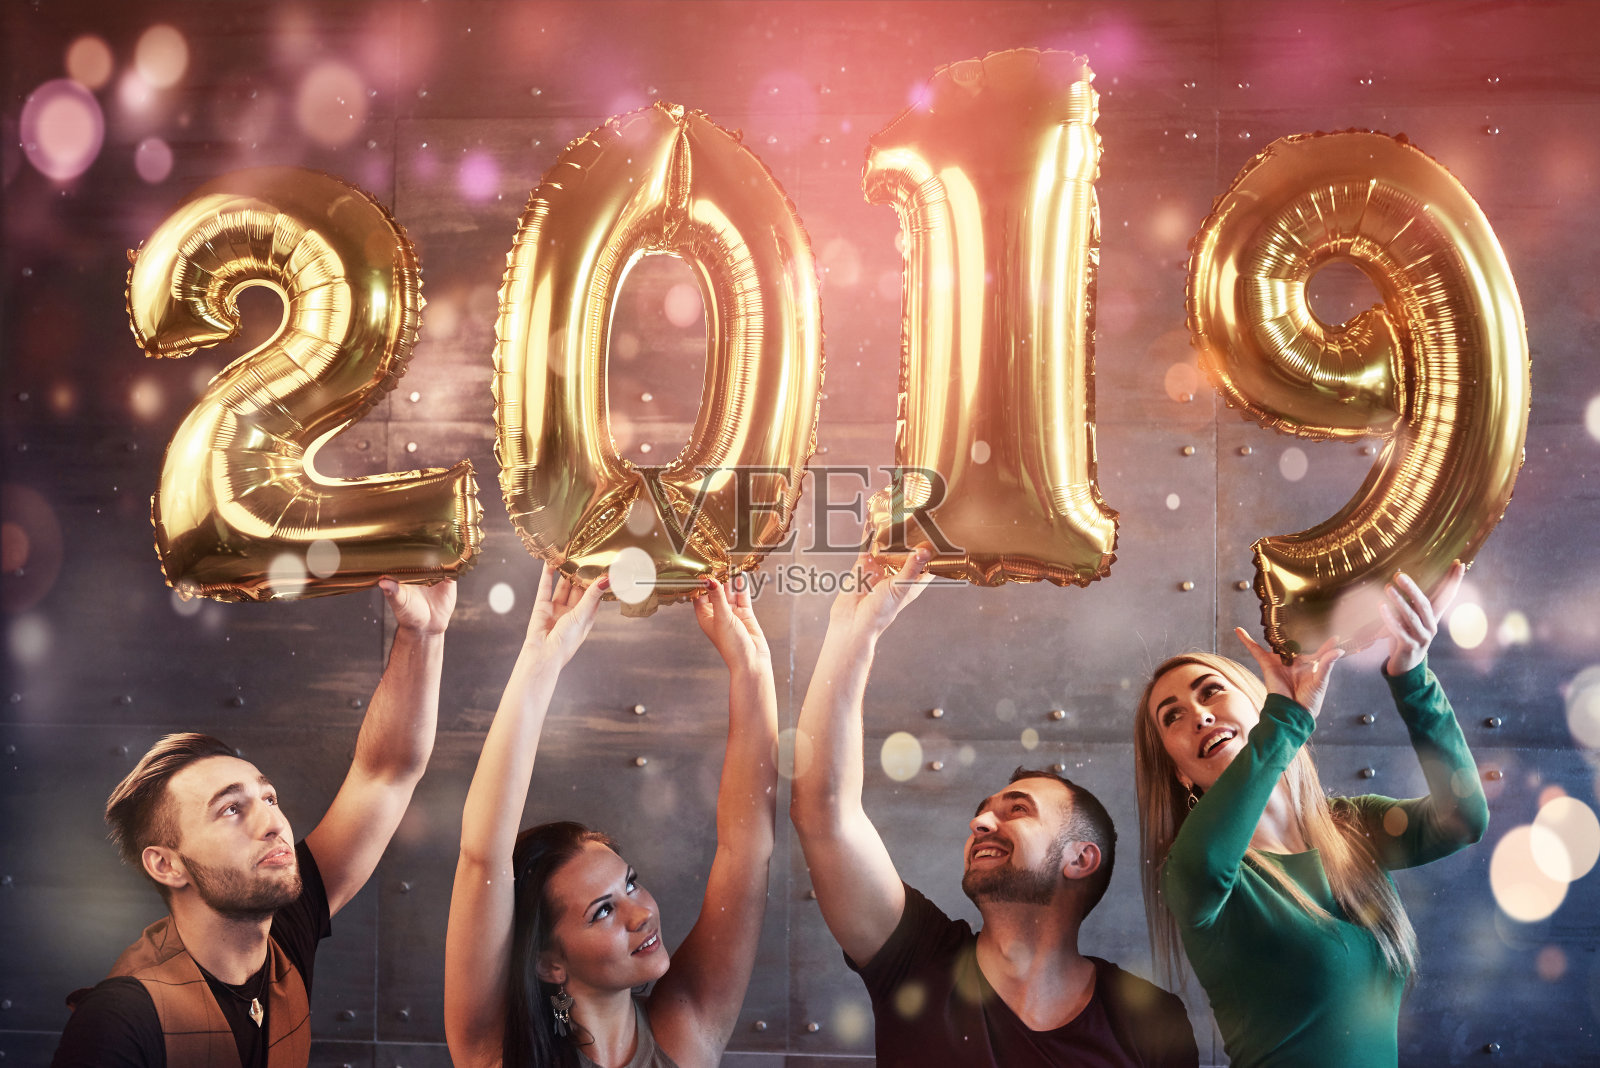 一群快乐的年轻人拿着数字，预示着2019年的到来。这个晚会是为了庆祝新年而举行的。关于青年团聚生活方式的概念照片摄影图片